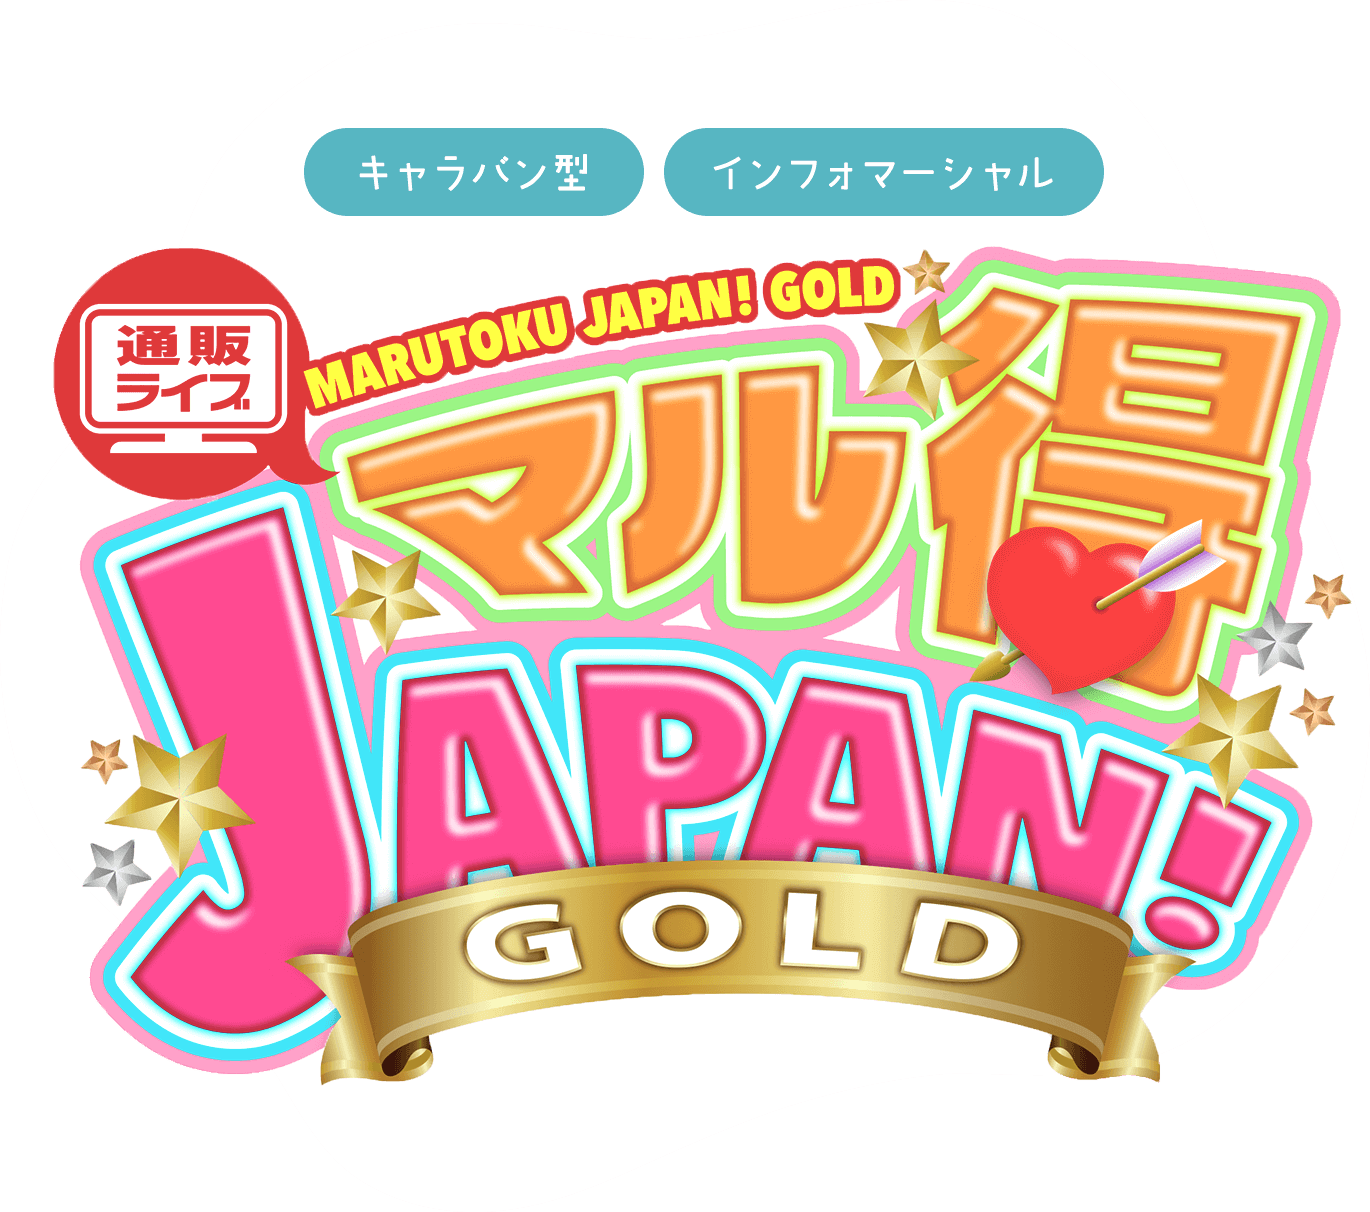 キャラバン型・インフォマーシャル通販ライブマル得JAPAN!GOLD